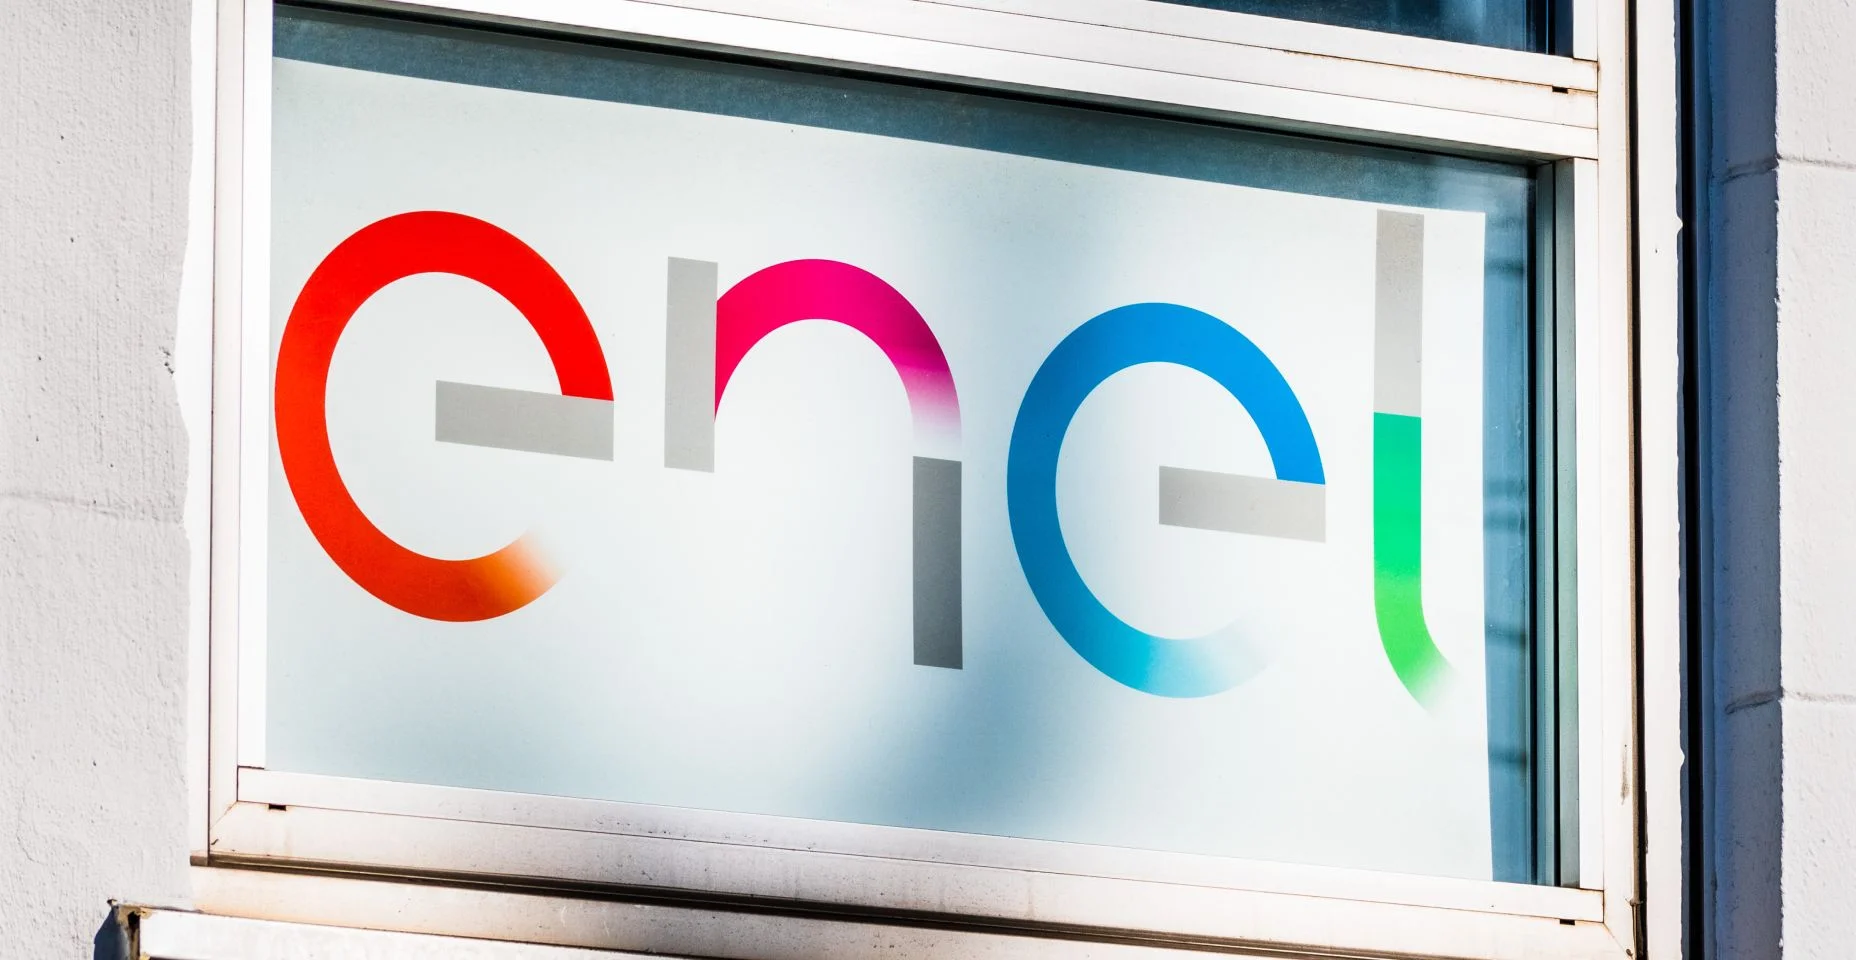 Placa da Enel exibida em seus escritórios no Vale do Silício; Enel S.p.A., ou Grupo Enel, é uma empresa multinacional italiana de energia